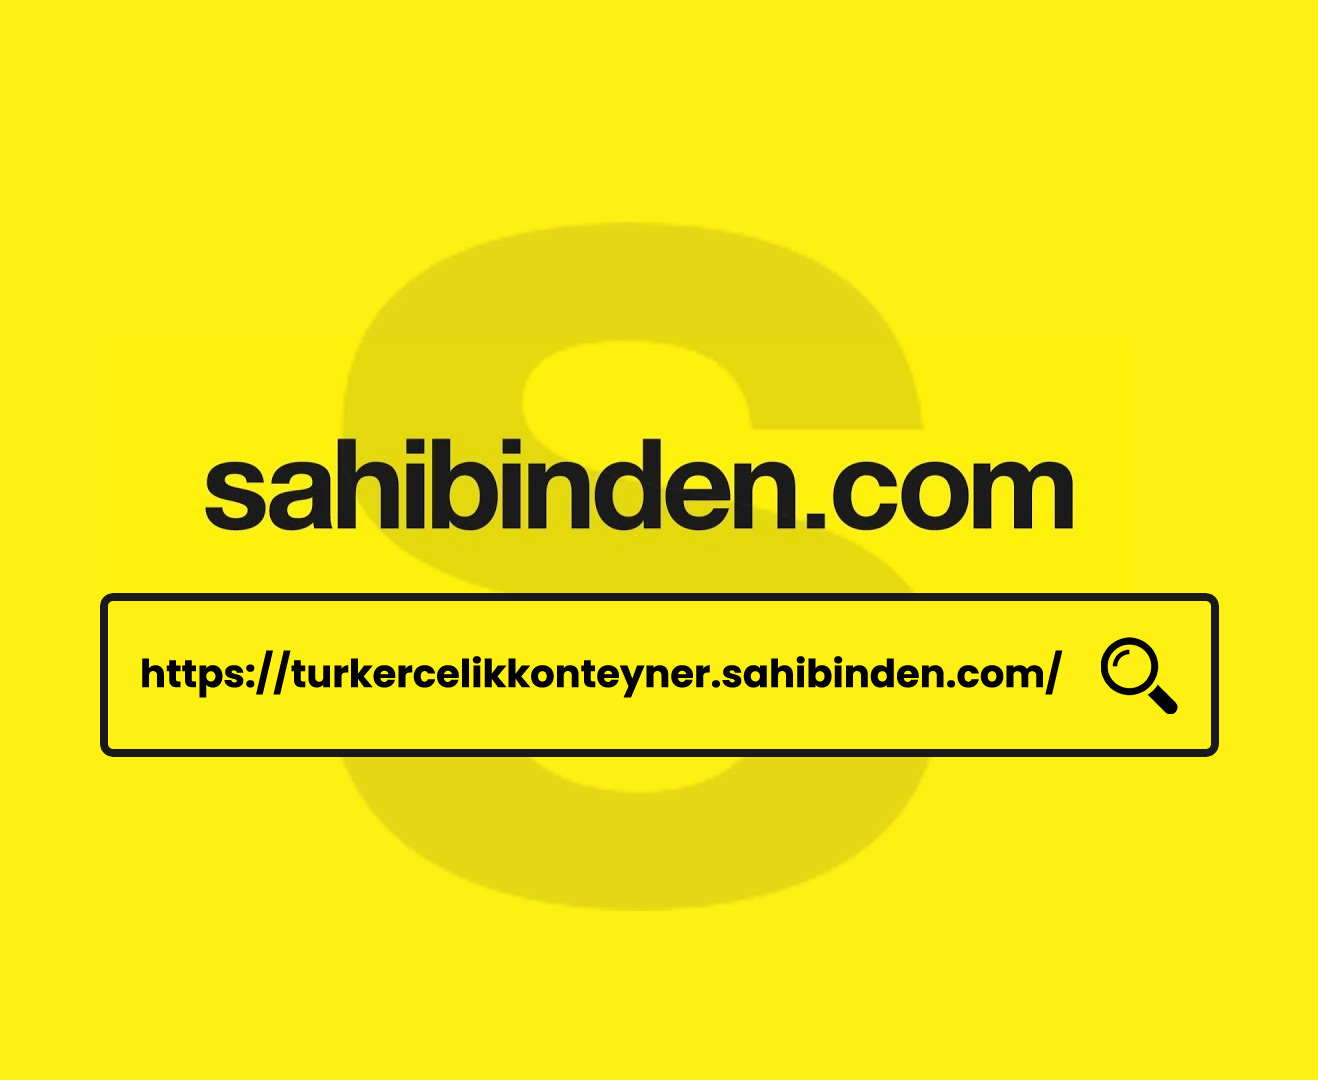 Türker Sahibinden.com da